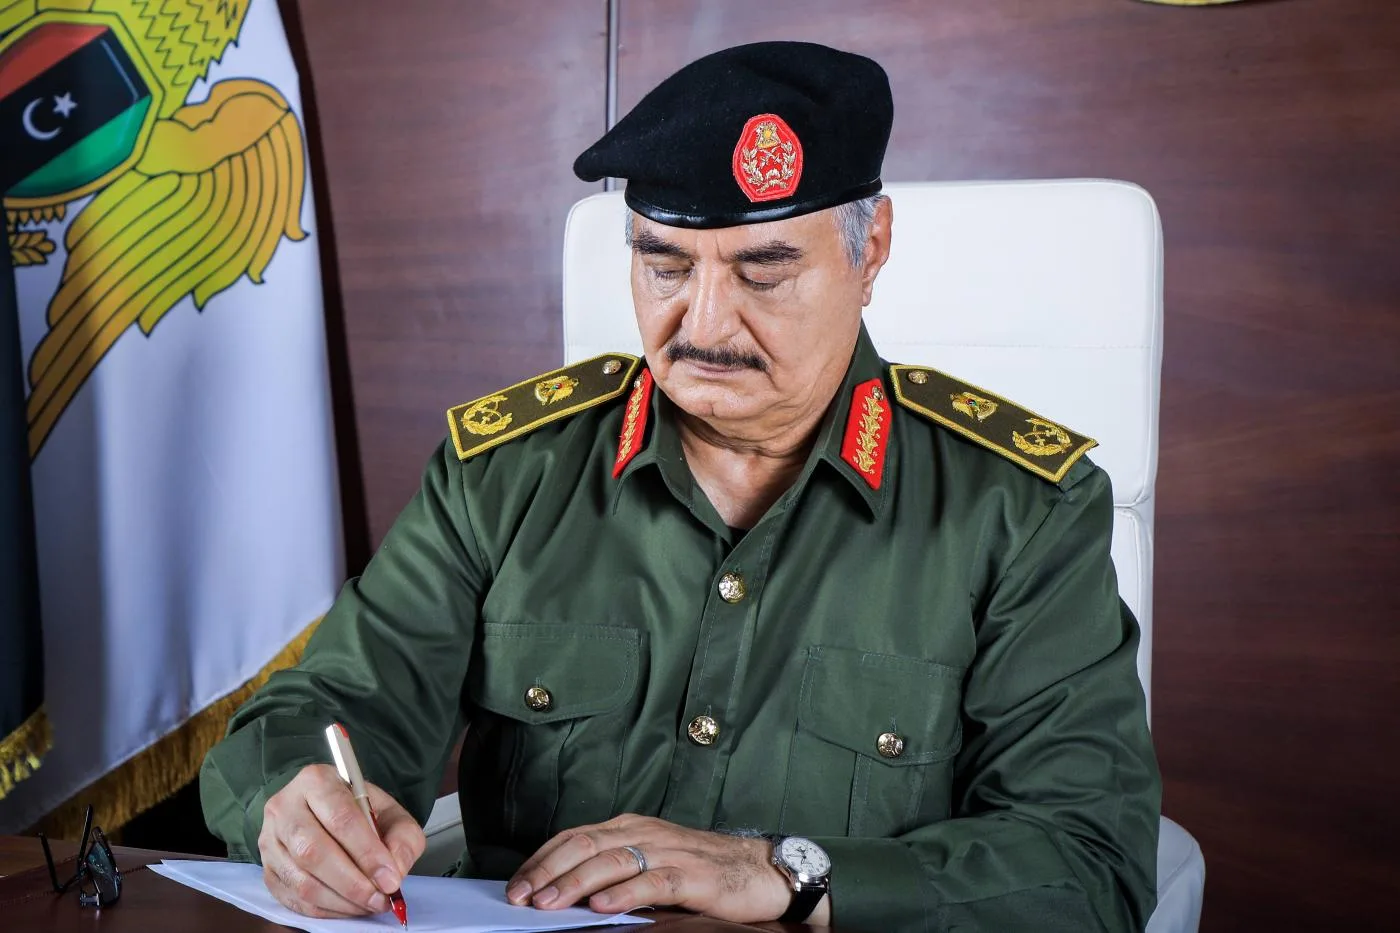 المشير خليفة حفتر، قائد ما يُسمى "الجيش الوطني الليبي" في شرق ليبيا، والذي شن حربًا على الحكومة المعترف بها دوليًا